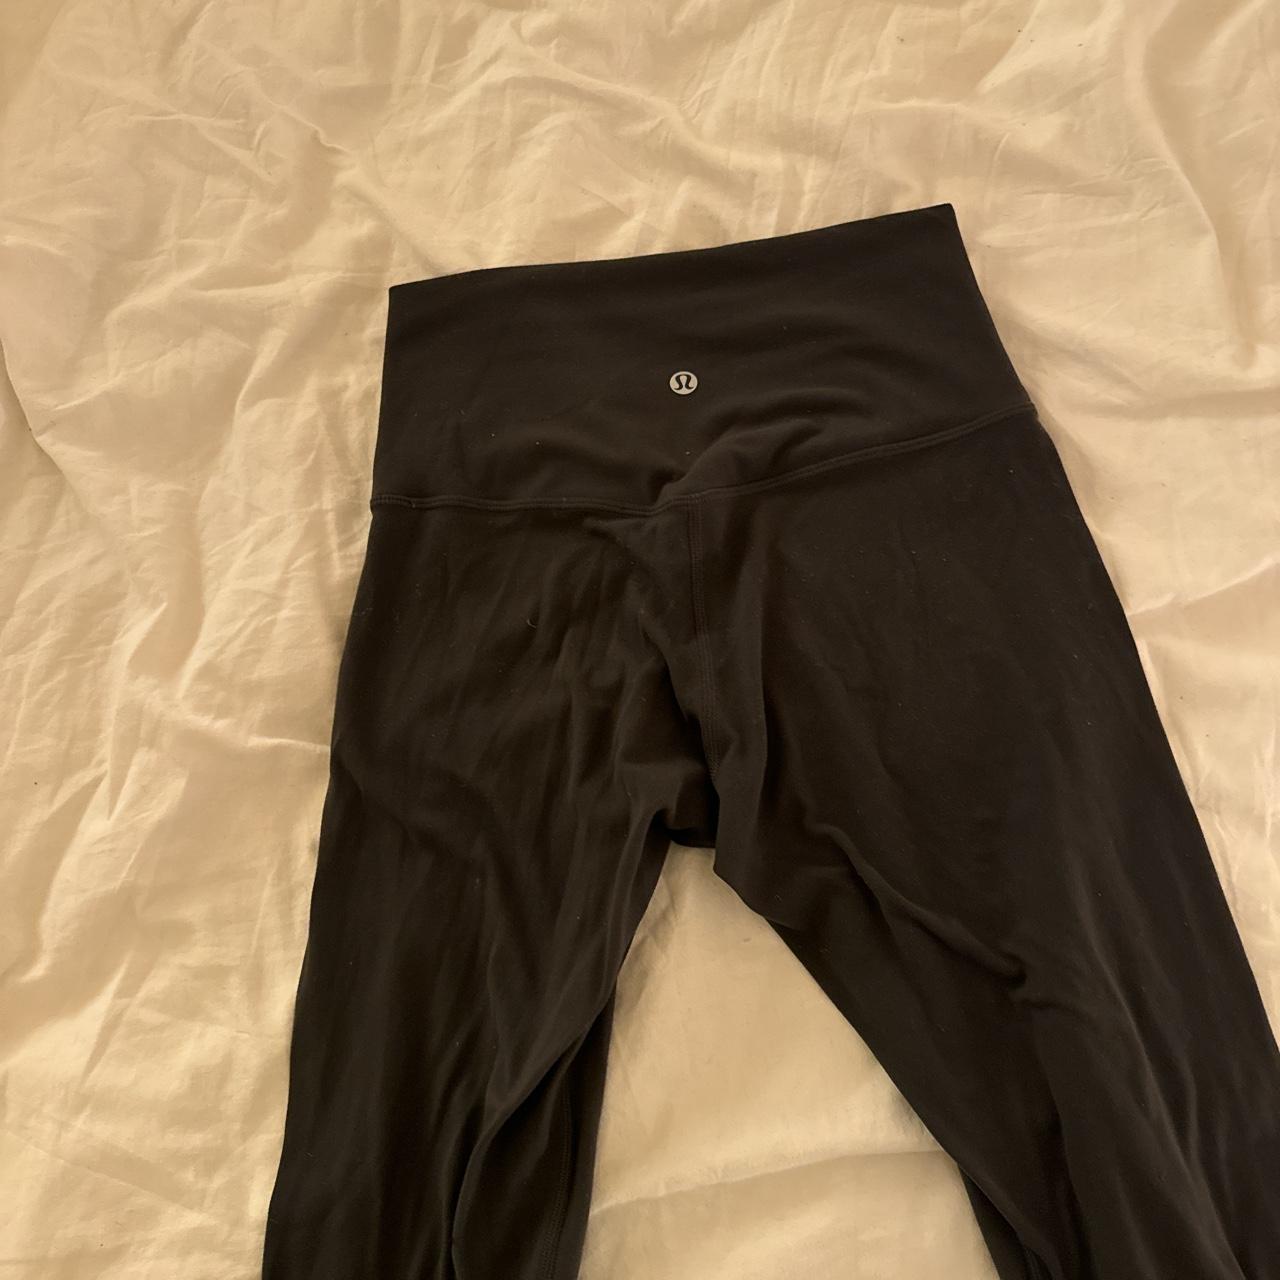 Lululemon align leggings 25” with pockets Barley - Depop